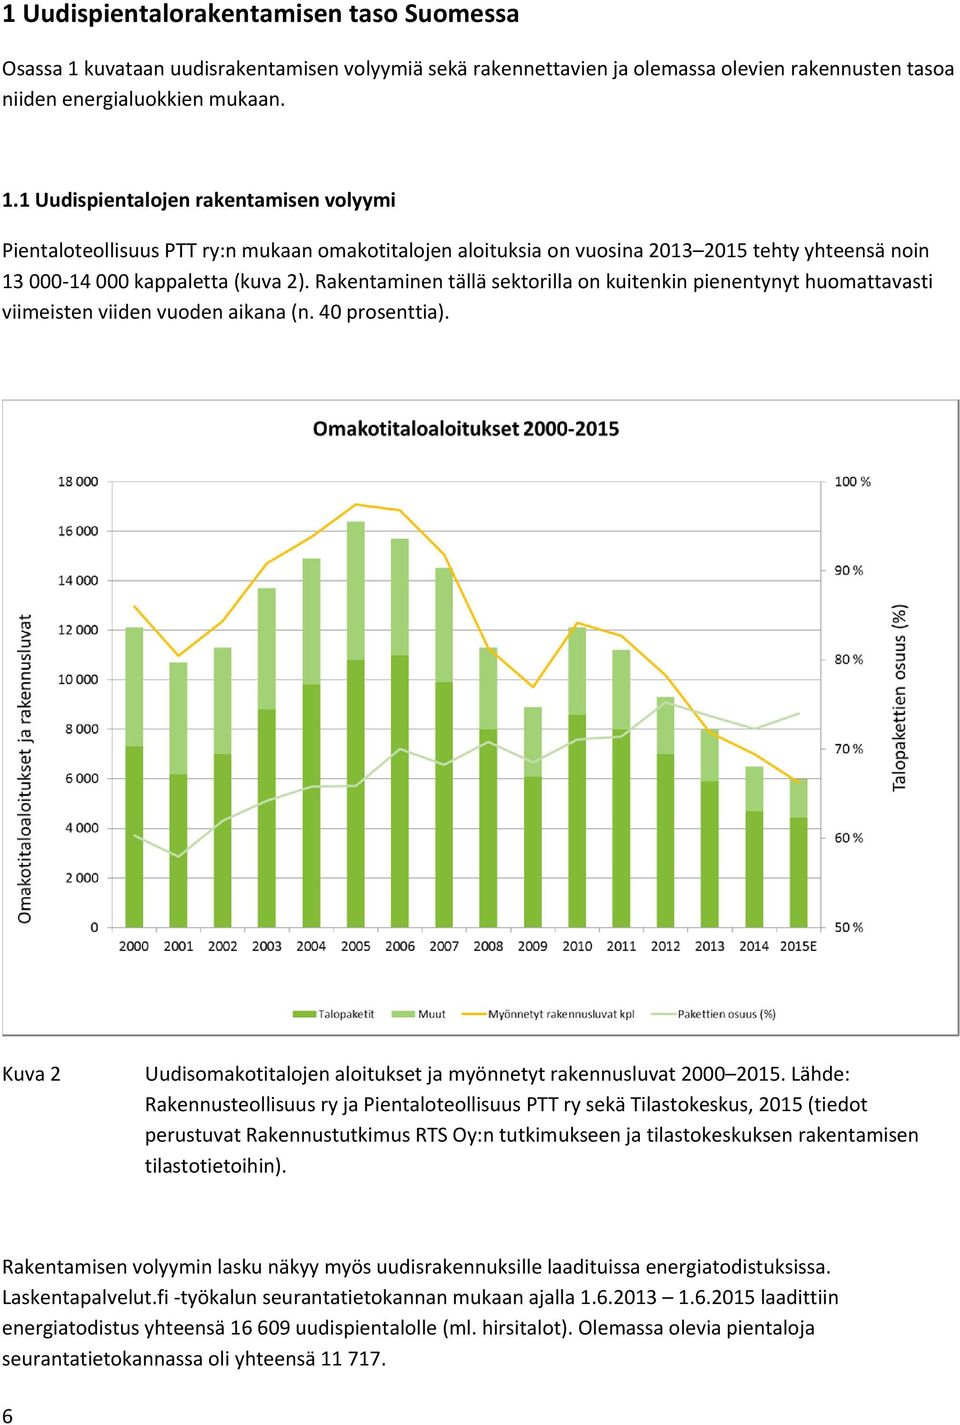 1 Uudispientalojen rakentamisen volyymi Pientaloteollisuus PTT ry:n mukaan omakotitalojen aloituksia on vuosina 2013 2015 tehty yhteensä noin 13 000-14 000 kappaletta (kuva 2).